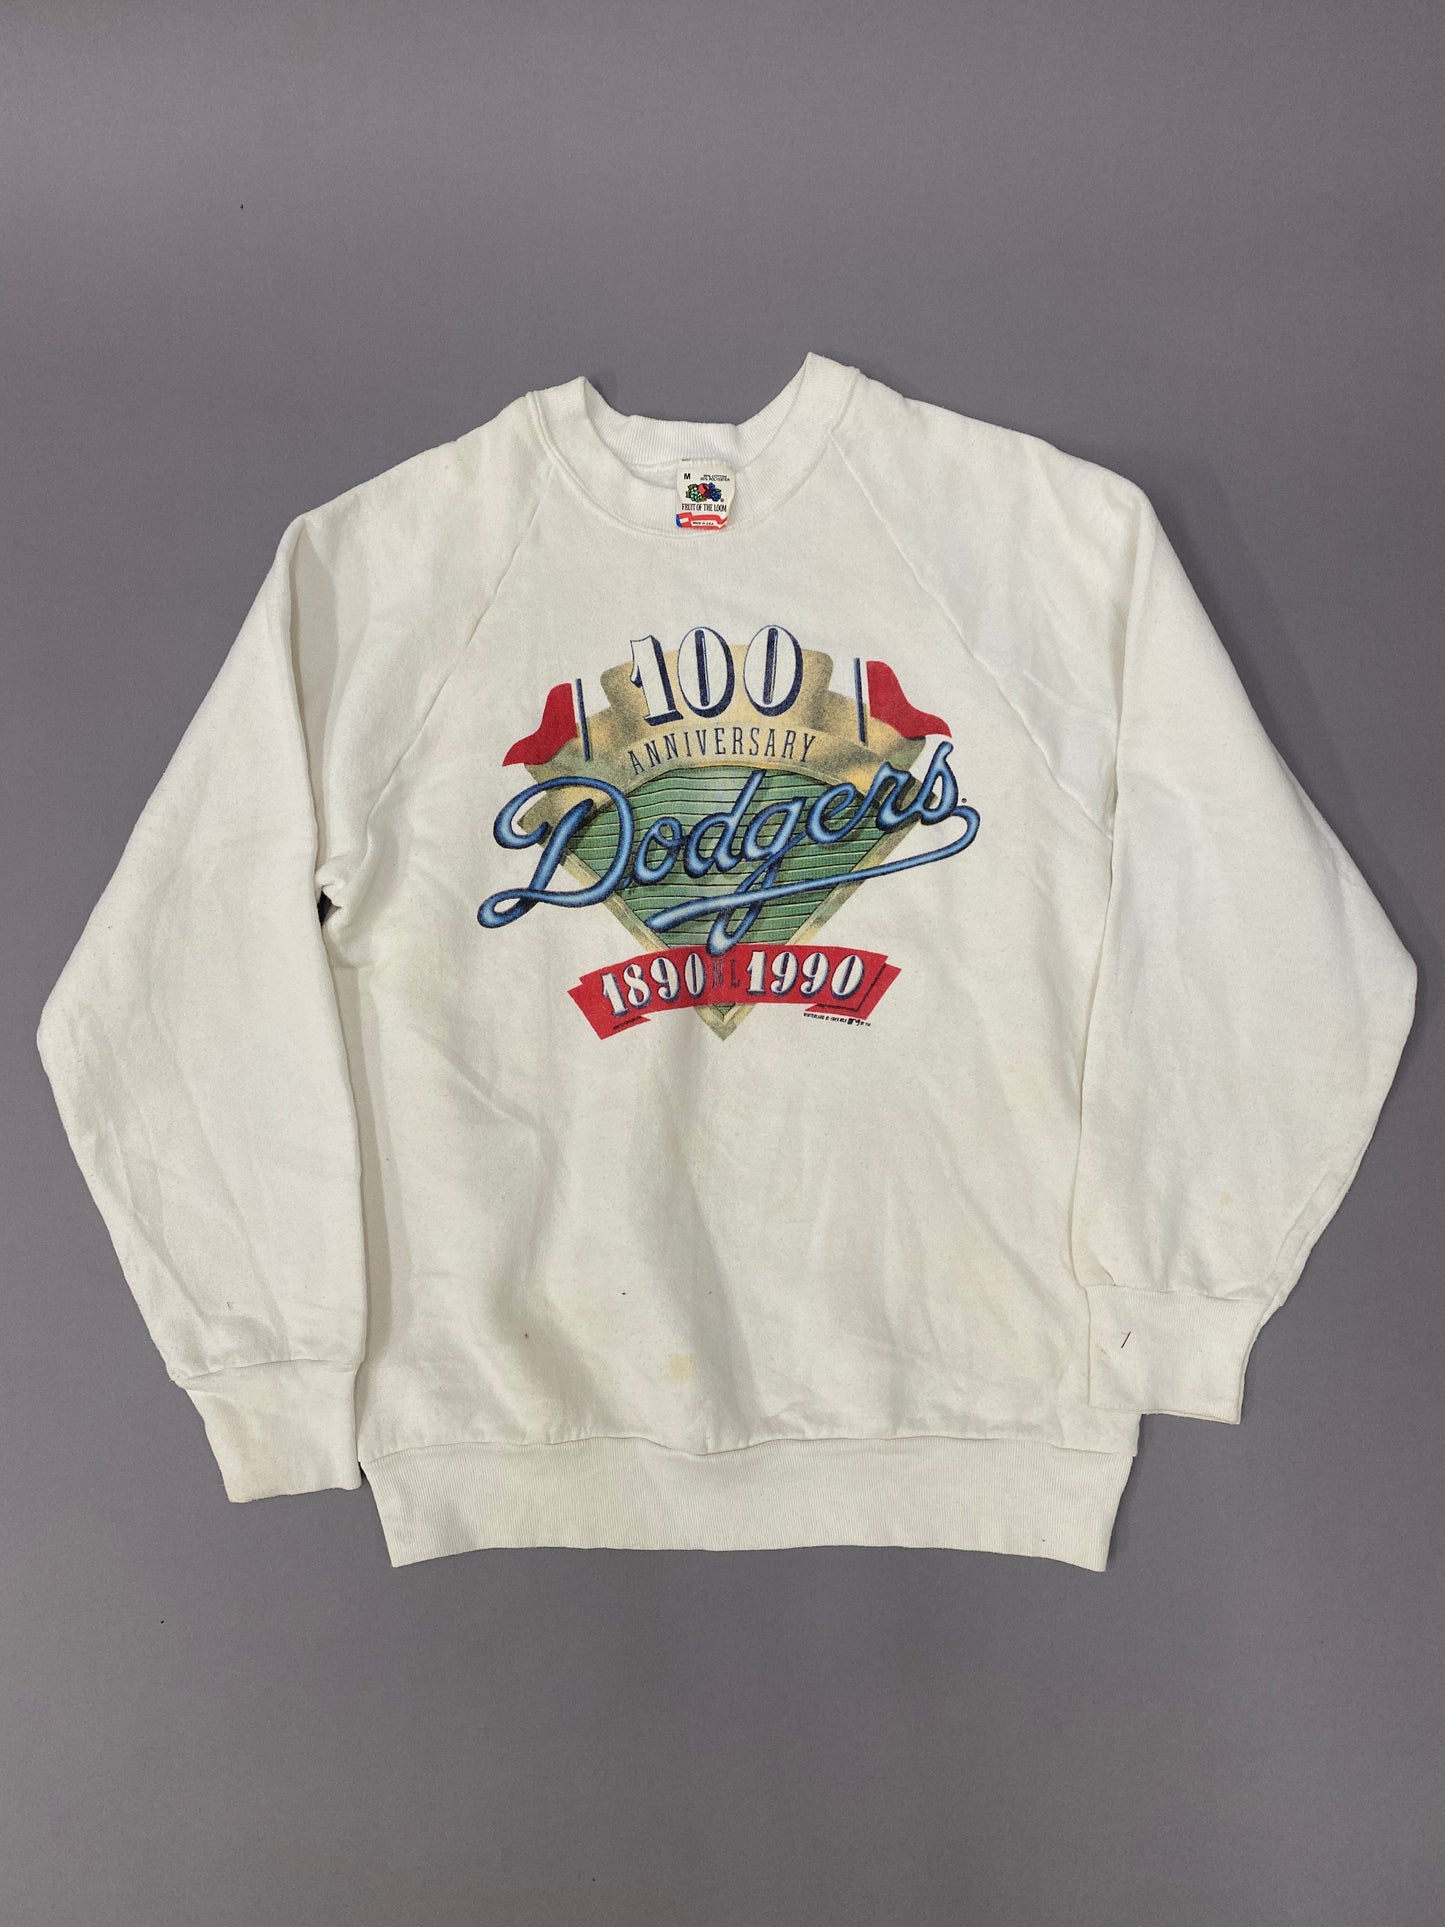 Dodgers 1990 sweatshirt